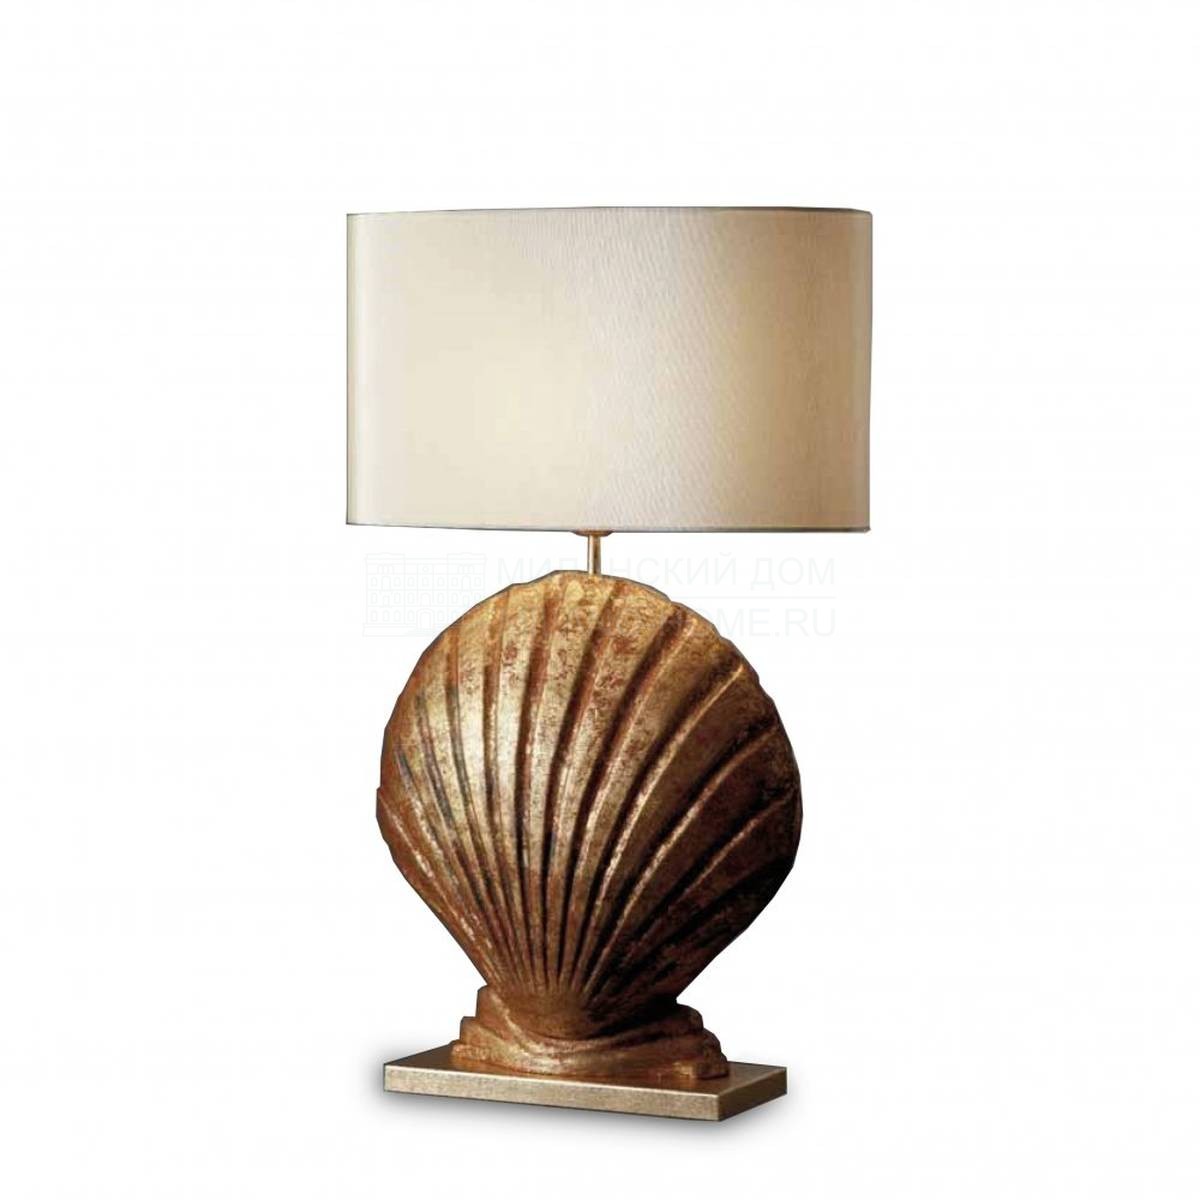 Настольная лампа Mytil table lamp из Италии фабрики MARIONI